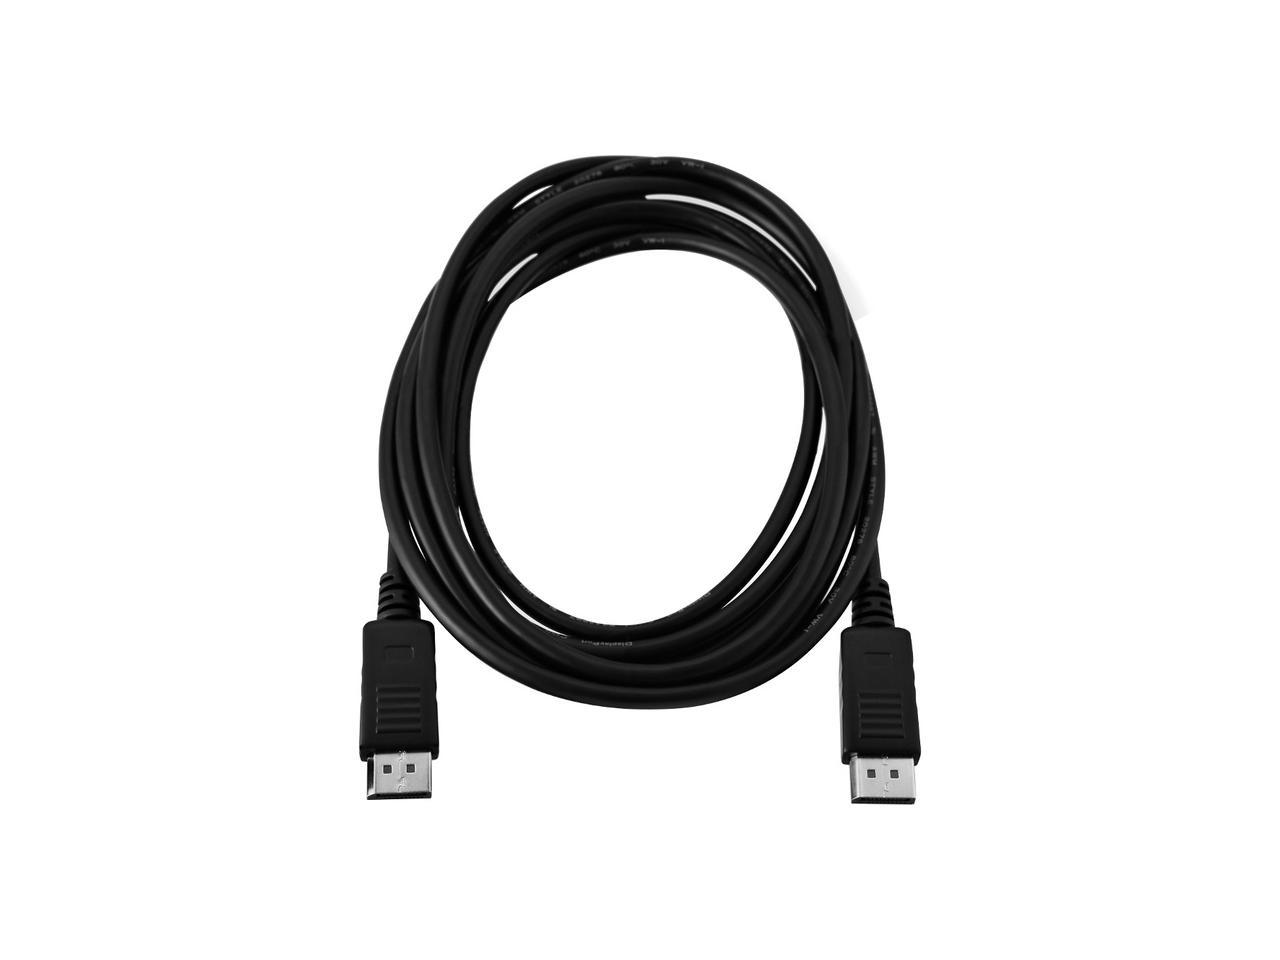 V7 V7DP2DP-6FT-BLK-1E Black Video Cable DisplayPort Male to DisplayPort Male 2m 6.6 ft.